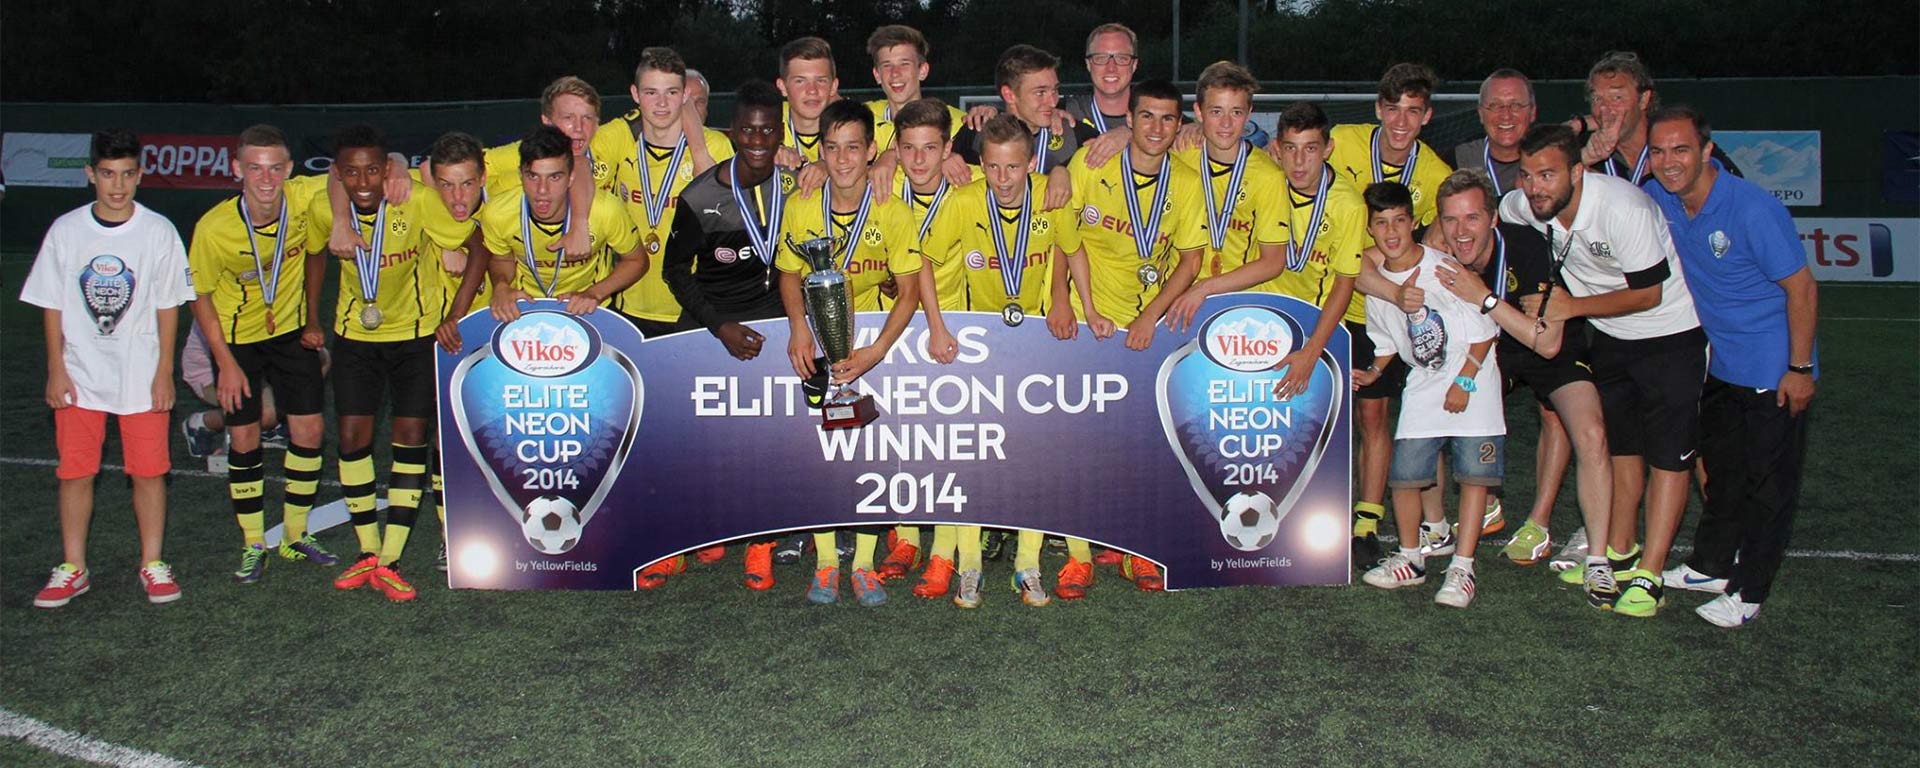 Βικος Elite Neon Cup 2014